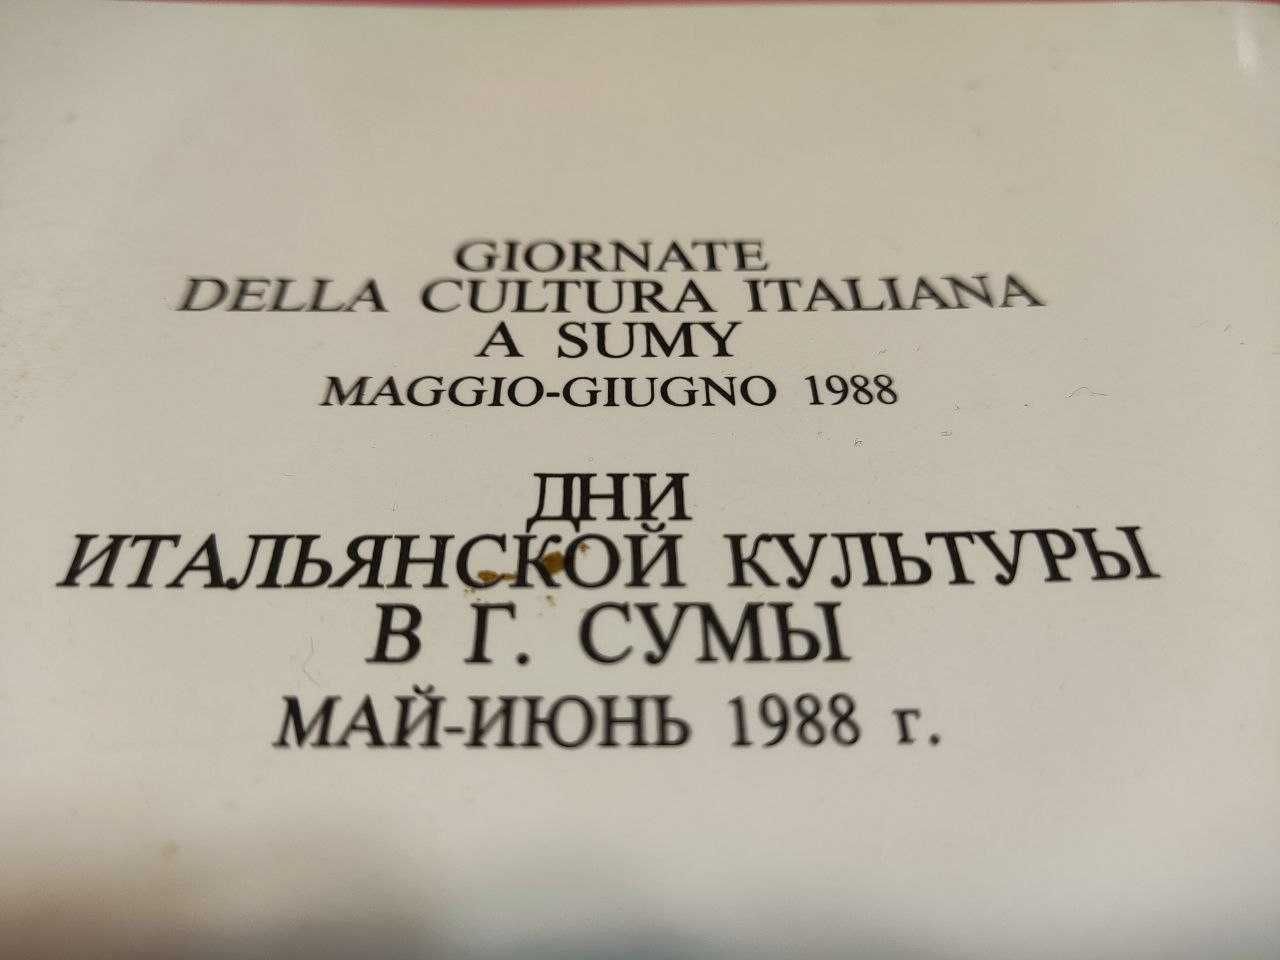 Дни итальянской культуры в г. Сумы май-июнь 1988. Каталог. Уник-фото